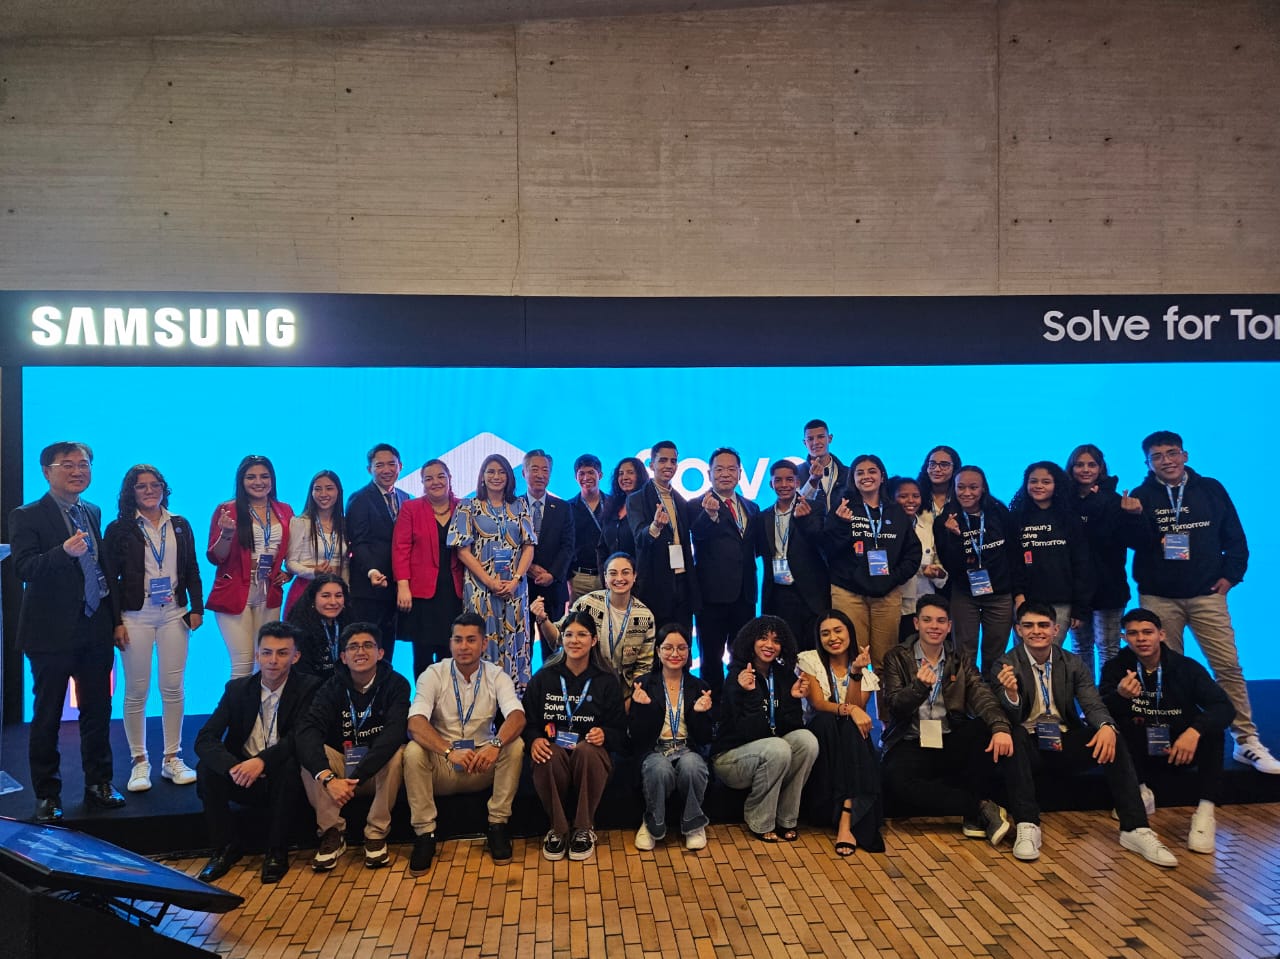 Solve for Tomorrow: el programa de Samsung celebra 10 años en América Latina, con más de 300 mil estudiantes beneficiados